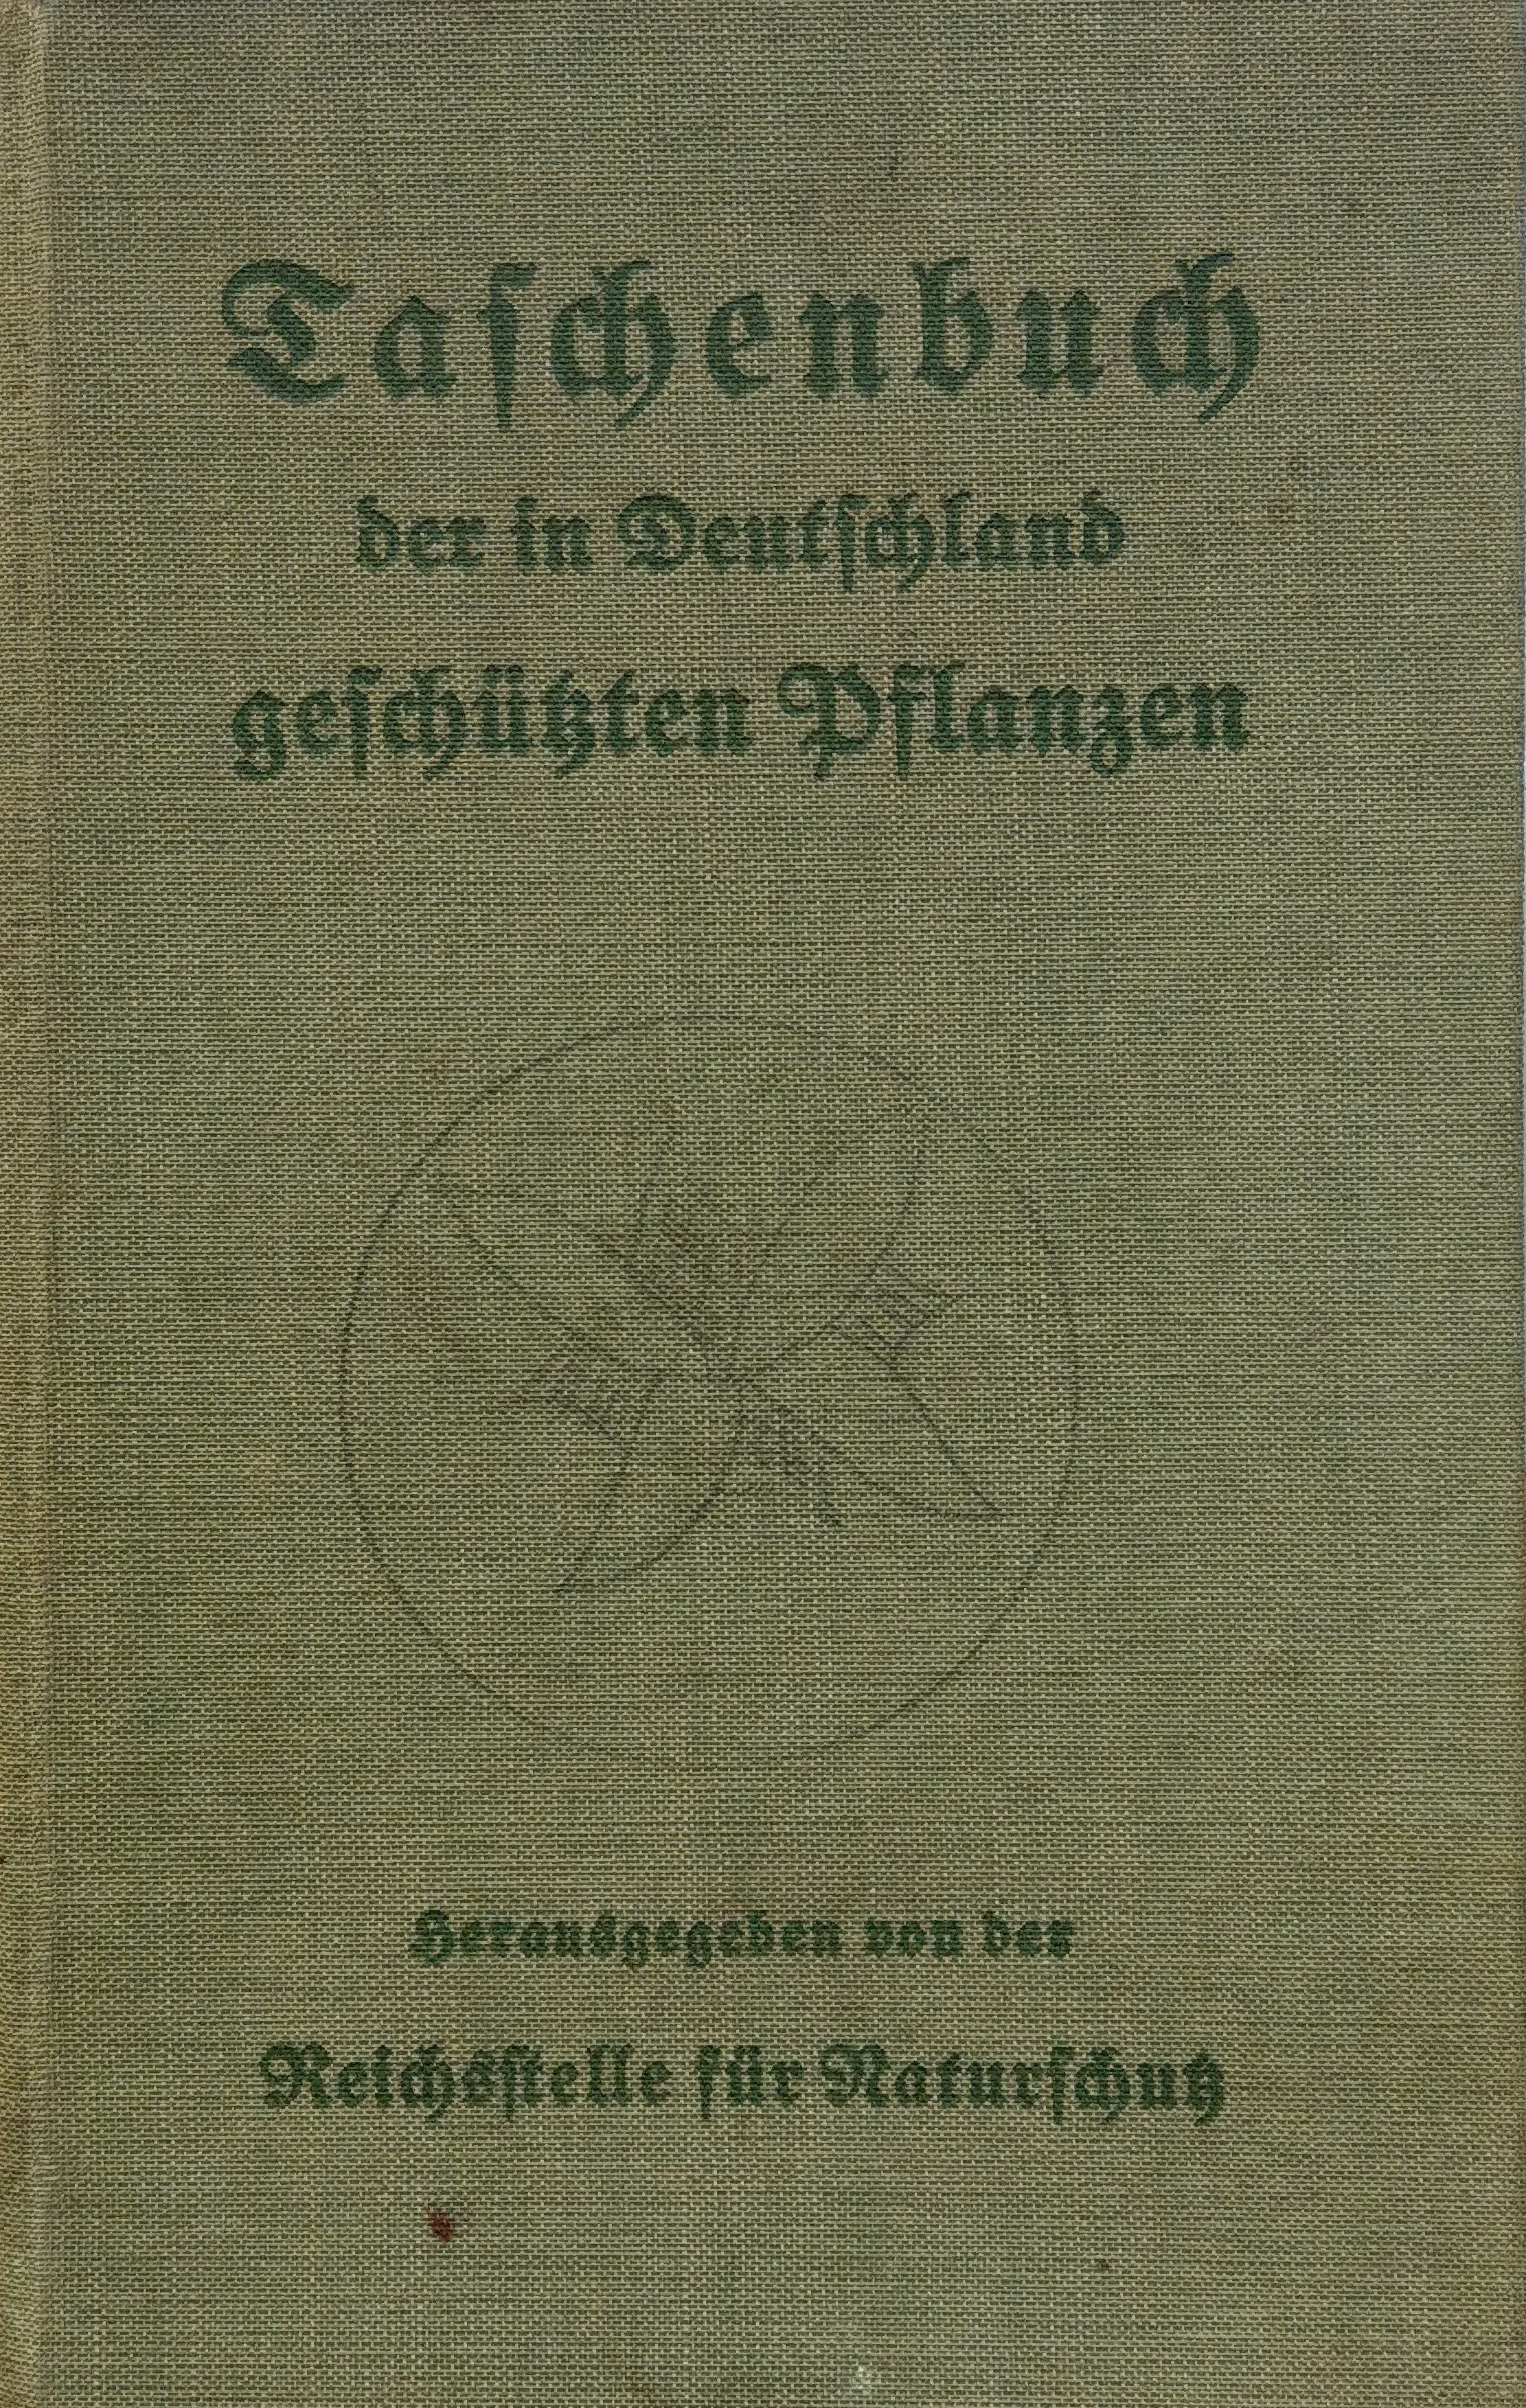 Taschenbuch der in Deutschland geschützten Pflanzen (Rippl-Rónai Múzeum CC BY-NC-ND)